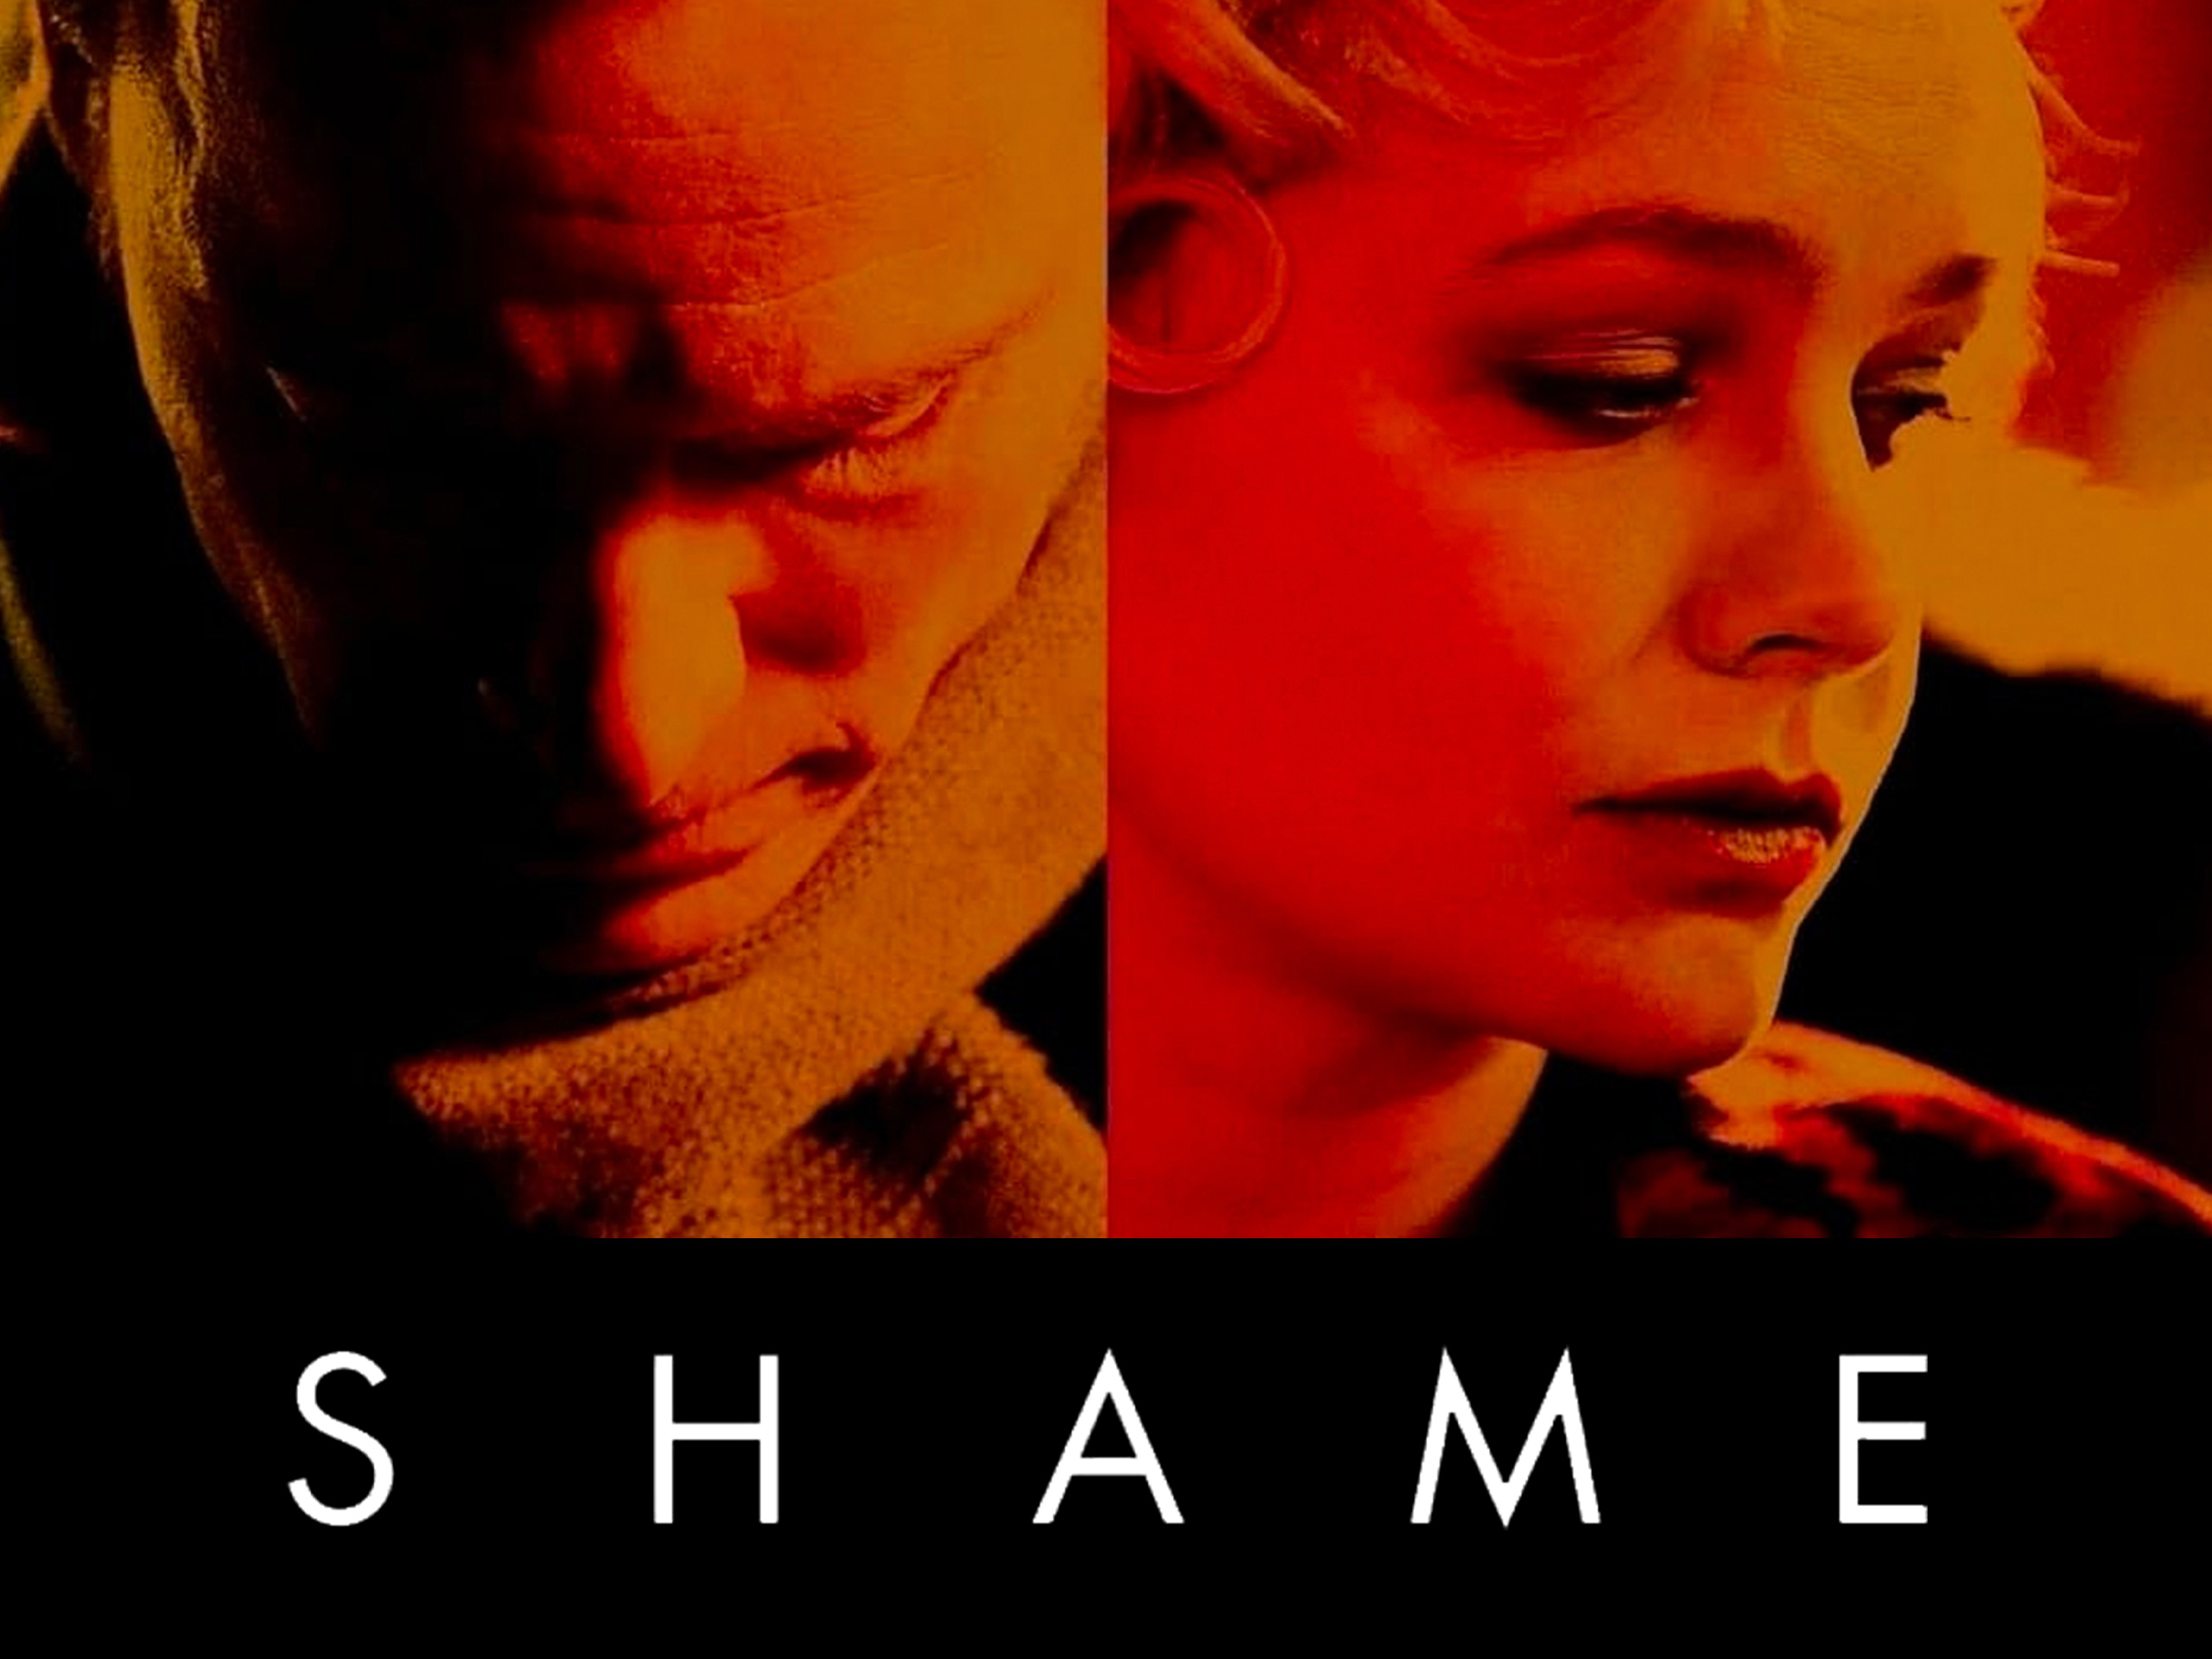 Best of Shame movie watch online